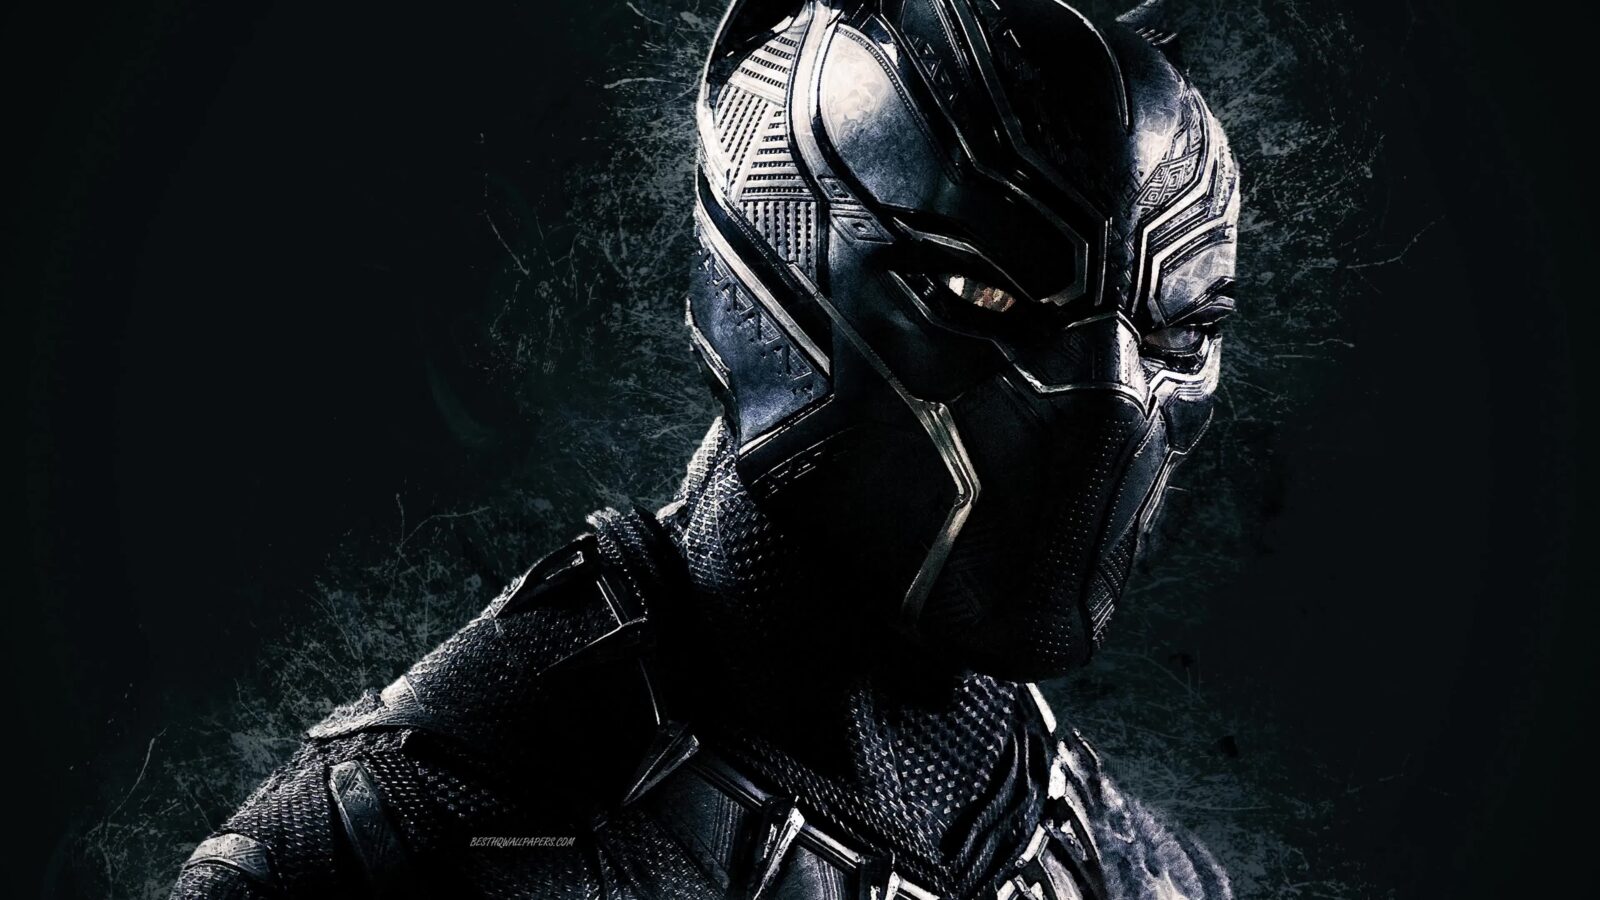 Black Panther Marvel 4K - Free Live Wallpaper - Live Desktop Wallpapers